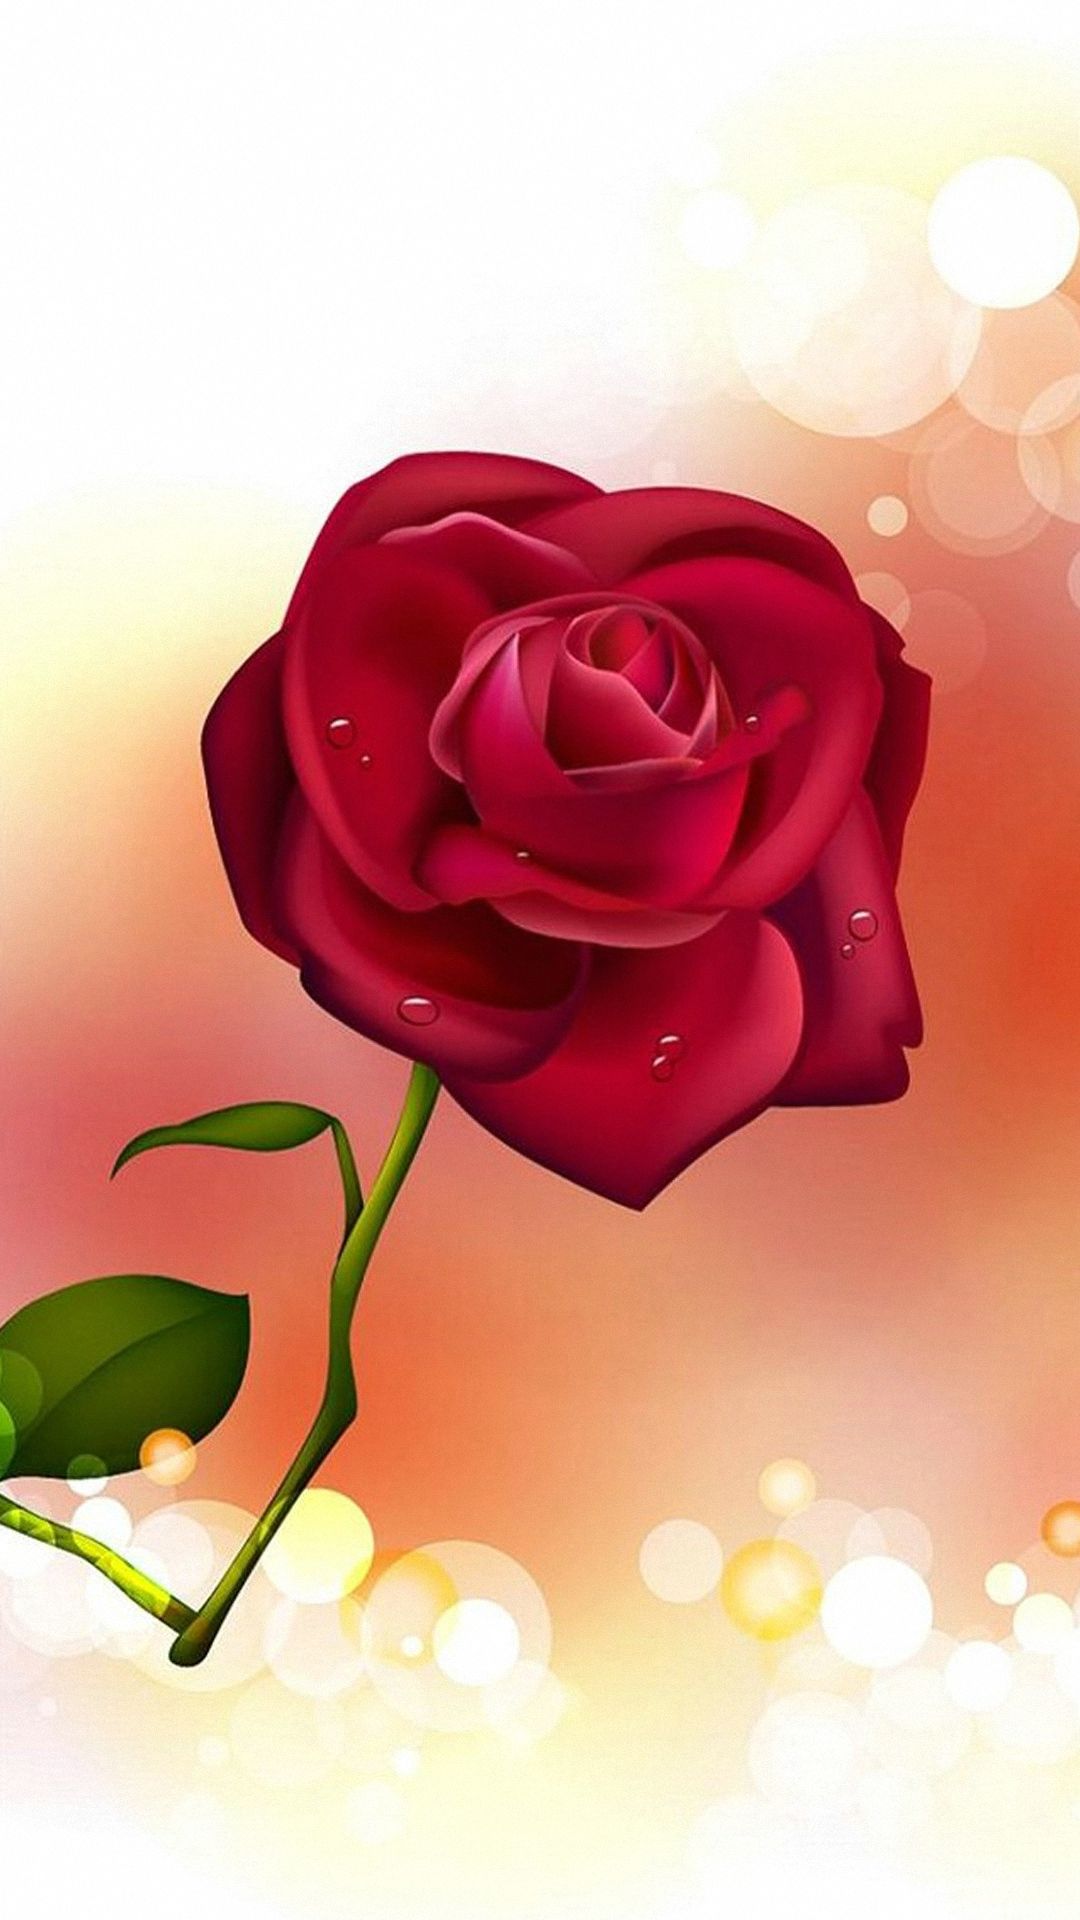 사랑 장미 hd 벽지,정원 장미,꽃잎,장미,분홍,빨간